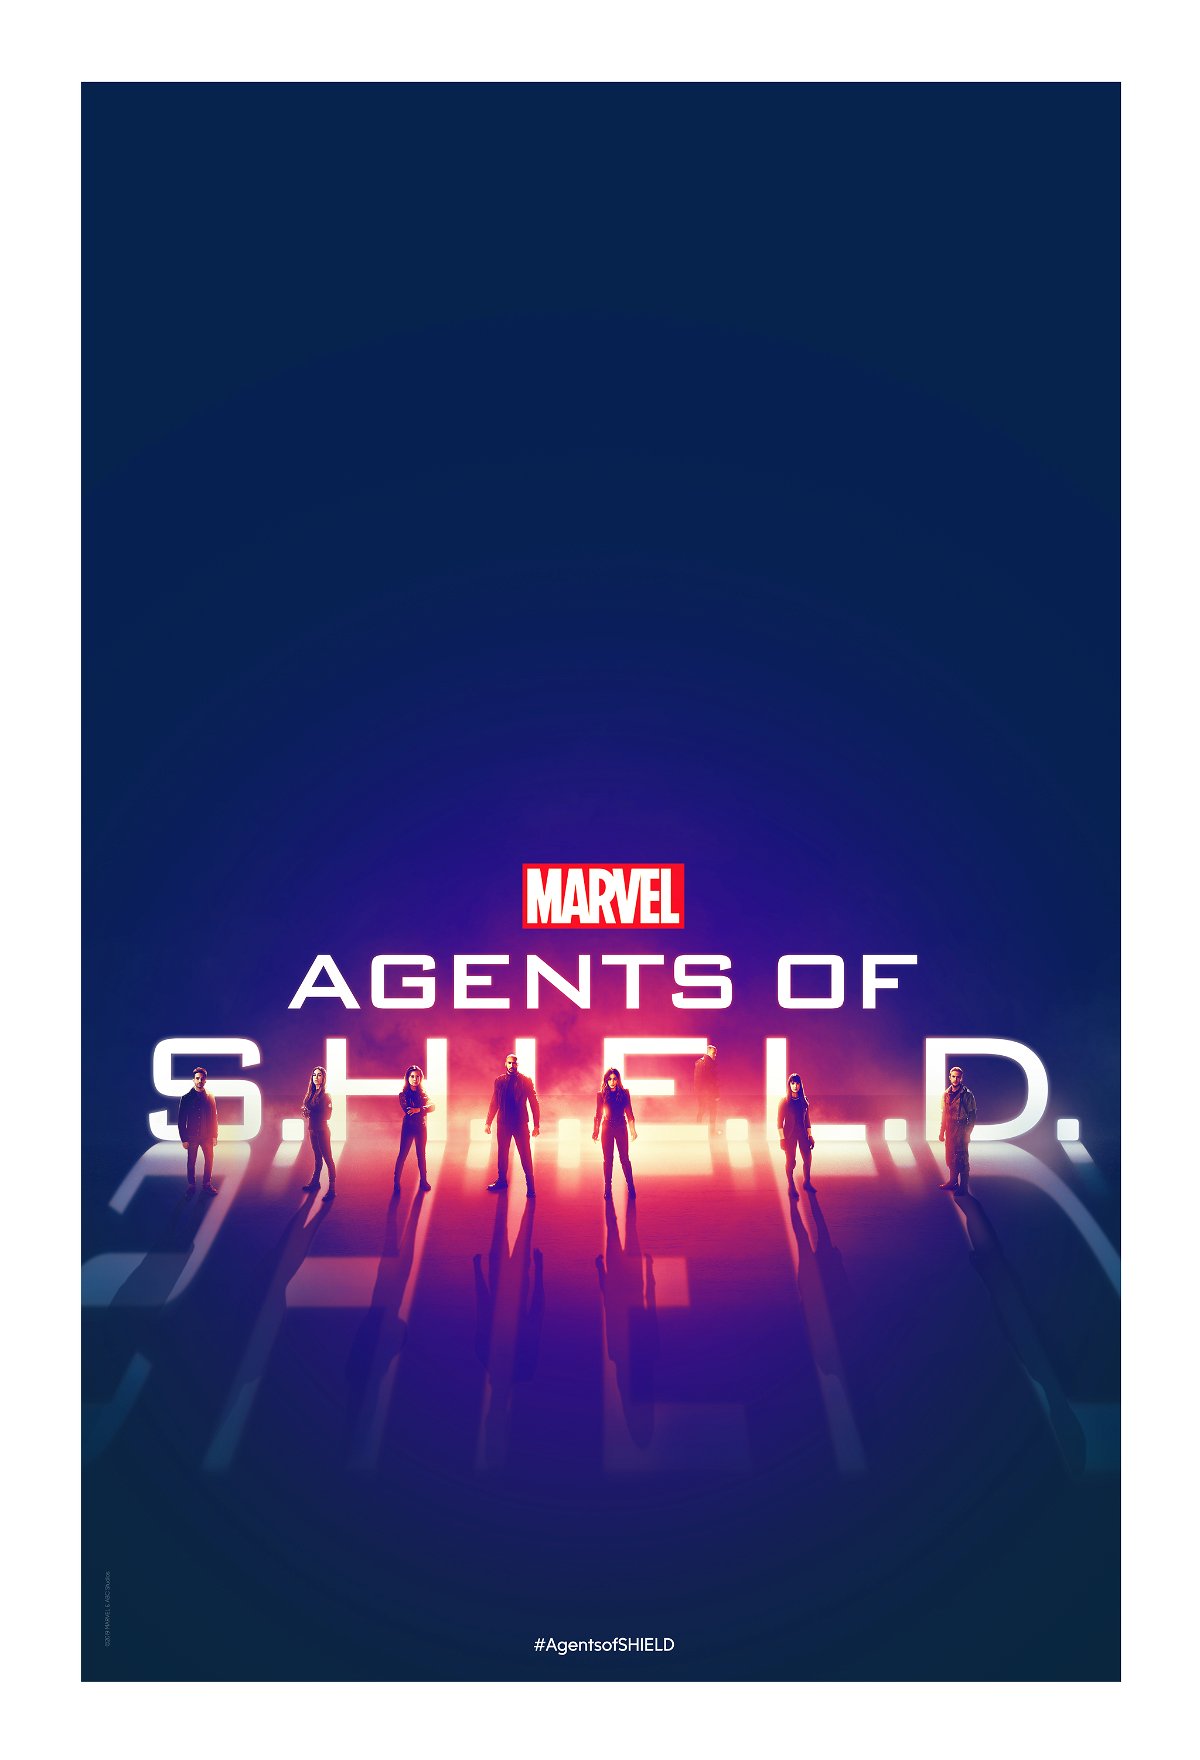 Il poster della stagione 6 di Agents of S.H.I.E.L.D.